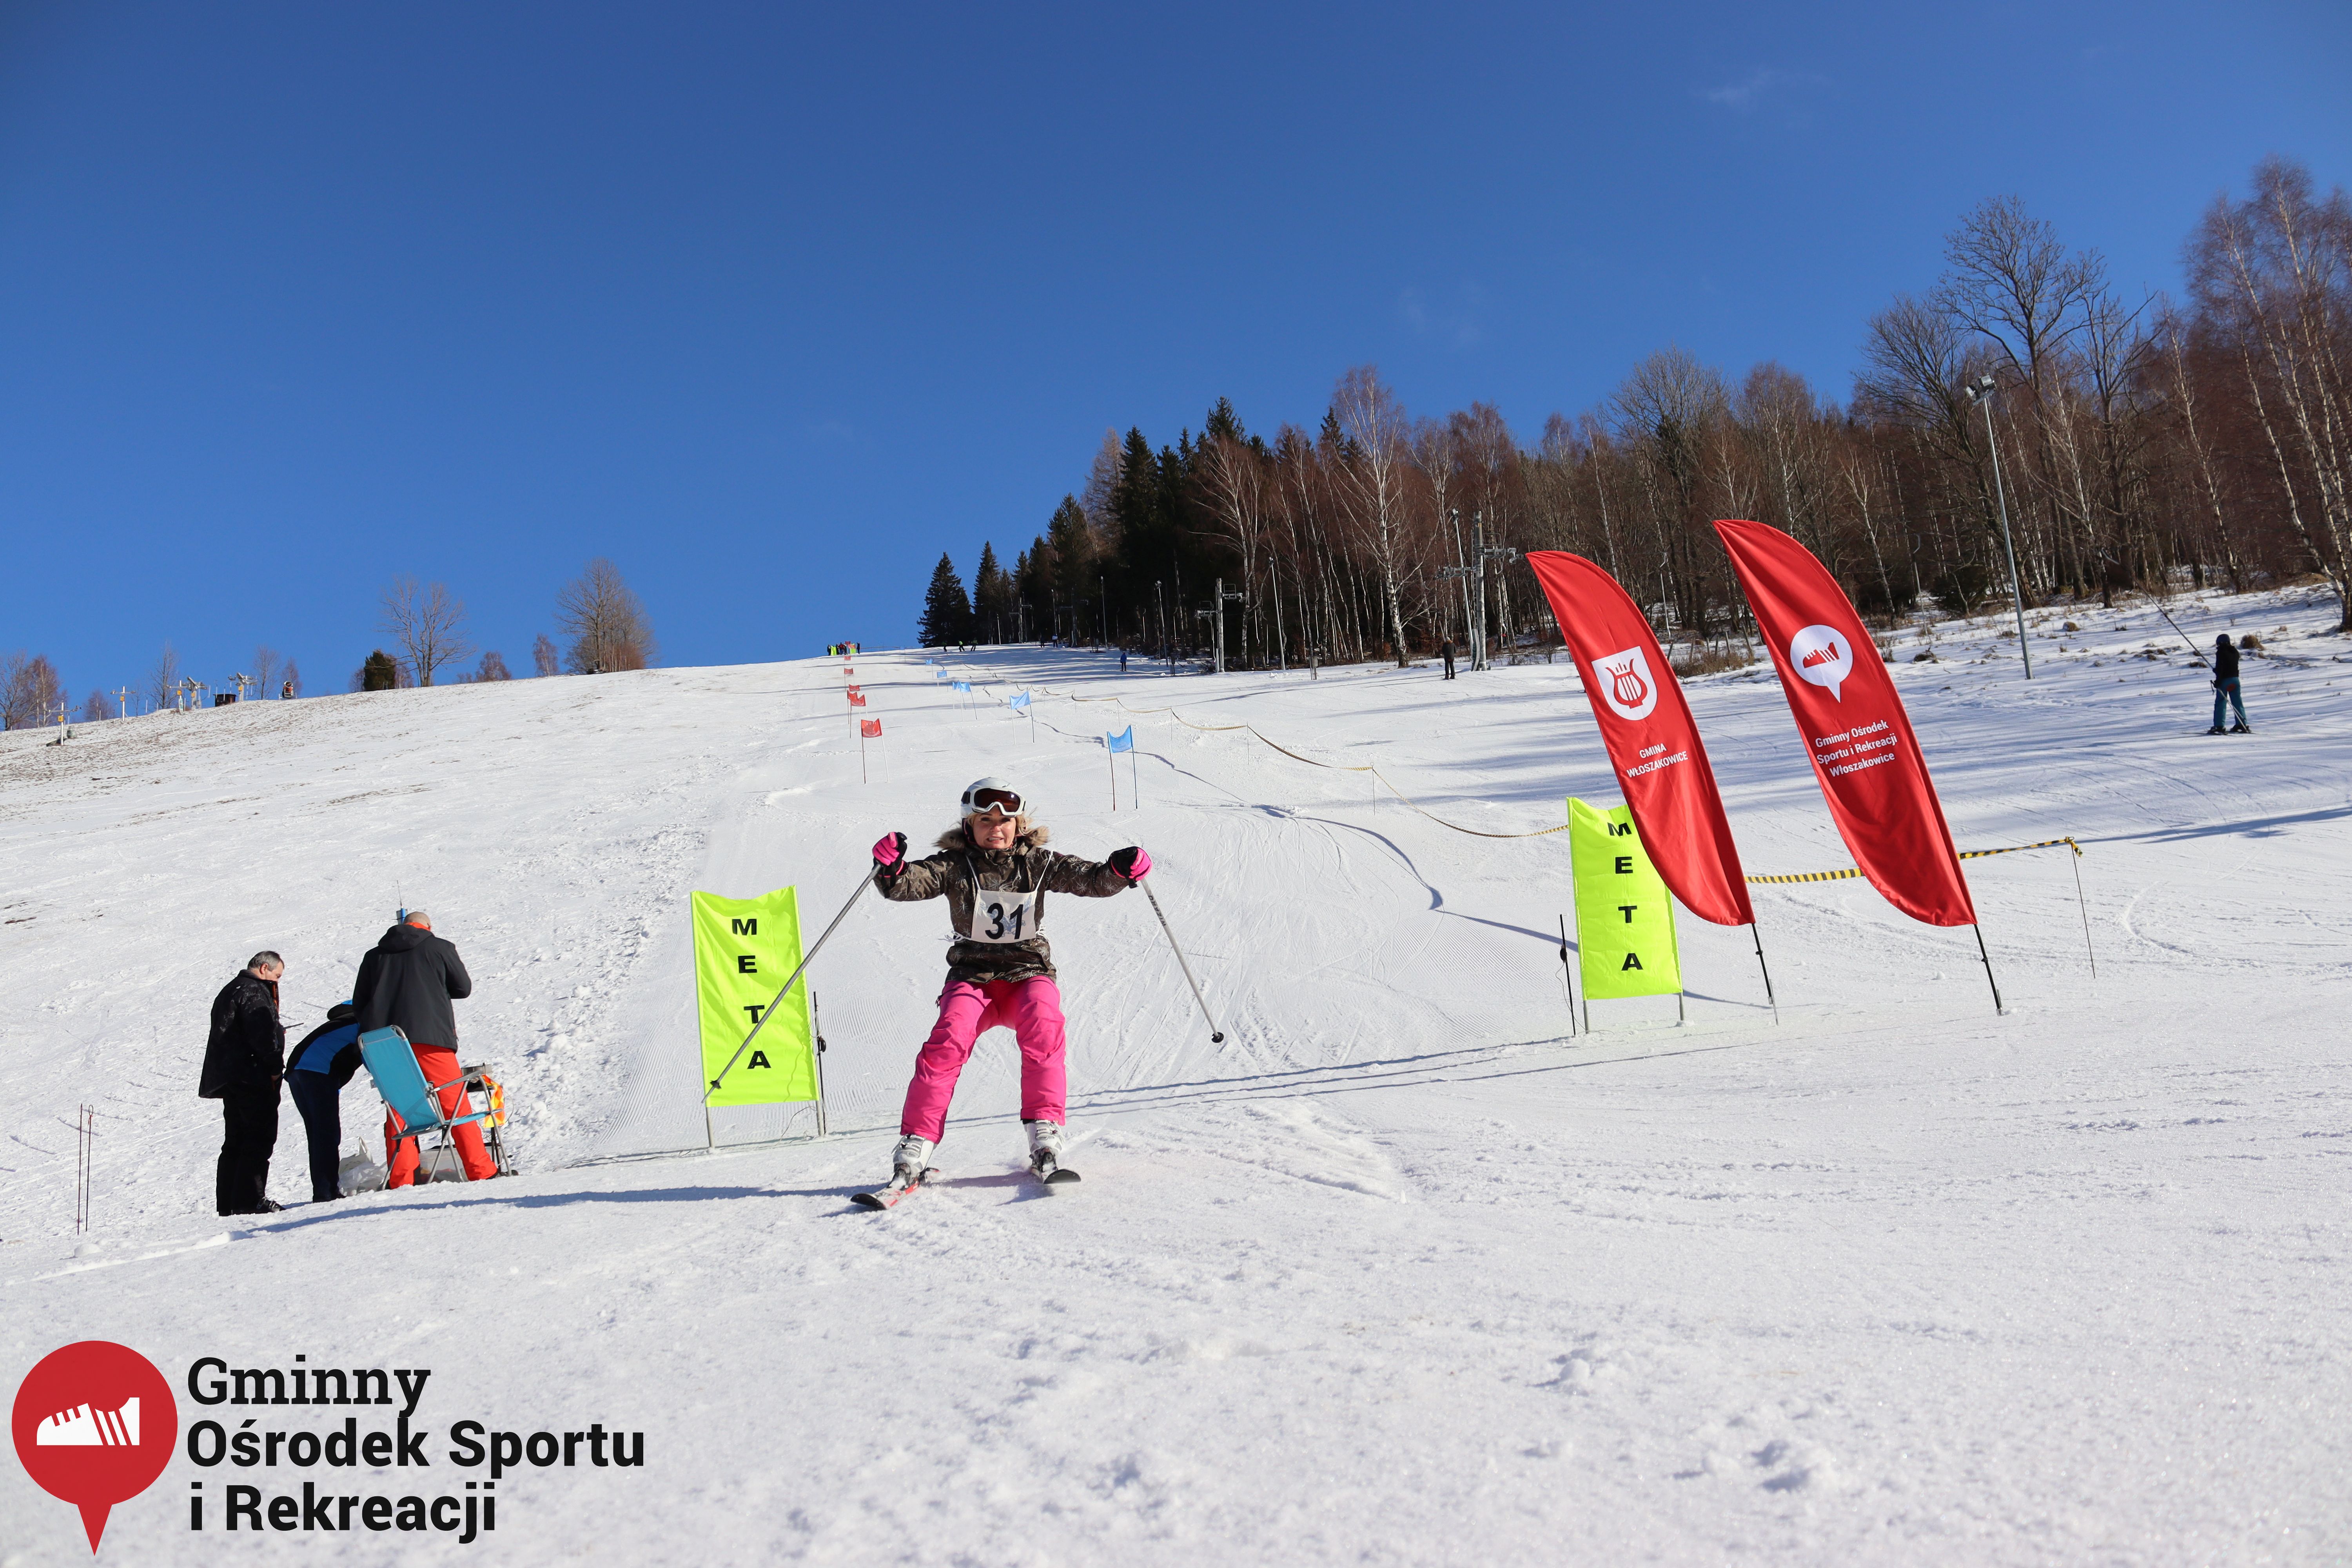 2022.02.12 - 18. Mistrzostwa Gminy Woszakowice w narciarstwie099.jpg - 2,40 MB